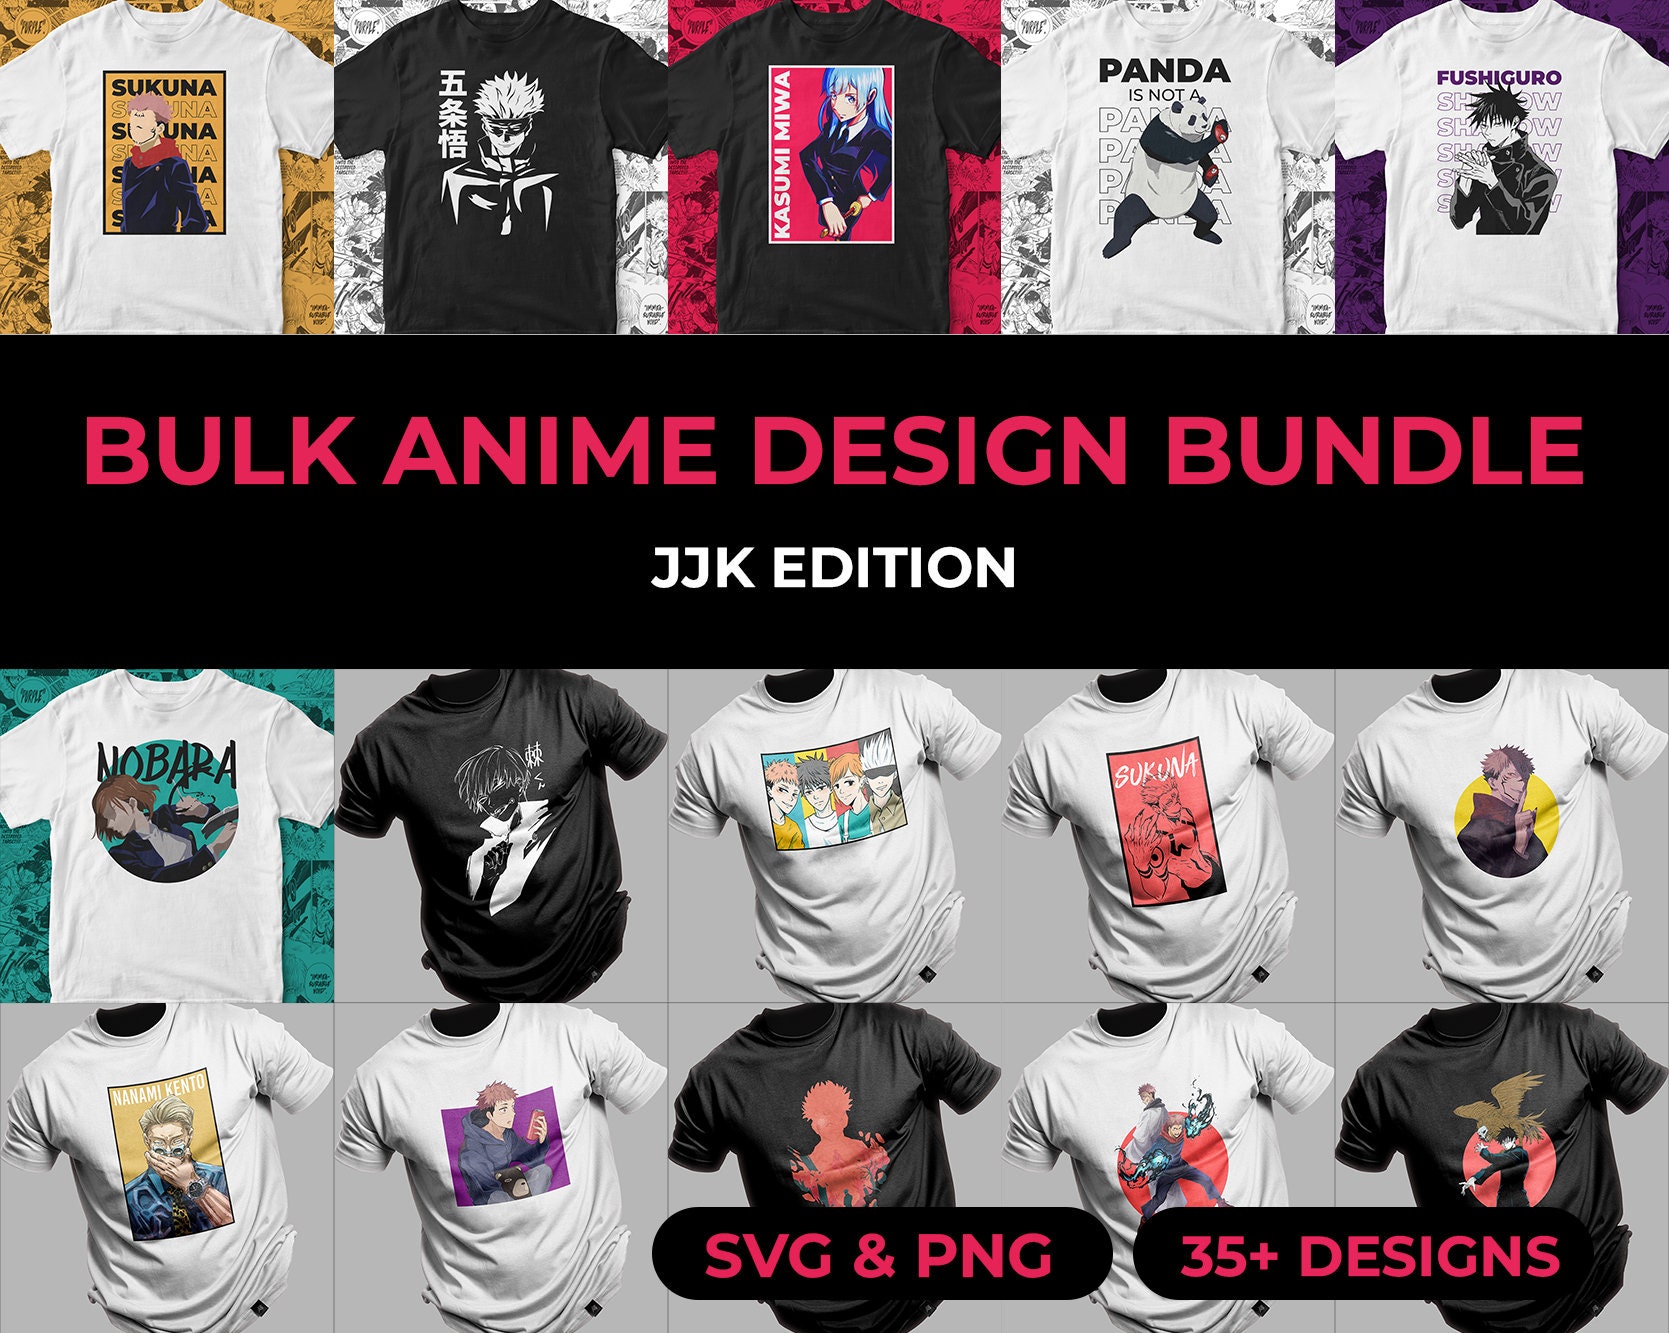 Mega Png and Svg Anime Design Bundle ALL JJK DESIGNS 35 High - Etsy  Australia